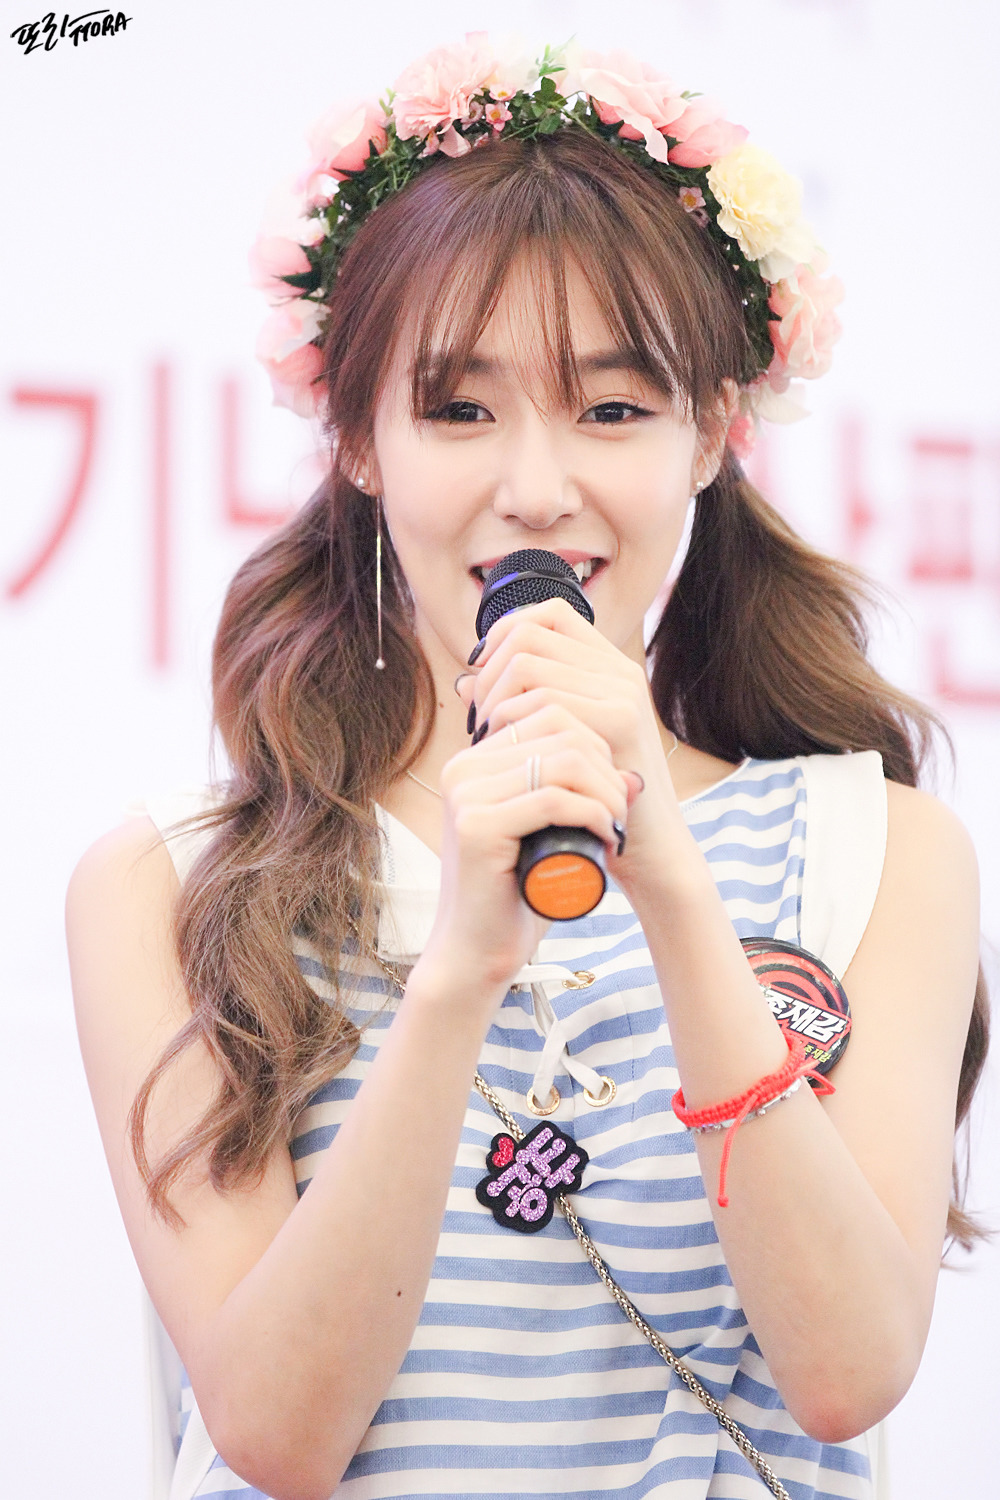 [PIC][06-06-2016]Tiffany tham dự buổi Fansign cho "I Just Wanna Dance" tại Busan vào chiều nay - Page 5 240C244757C557761C7F35